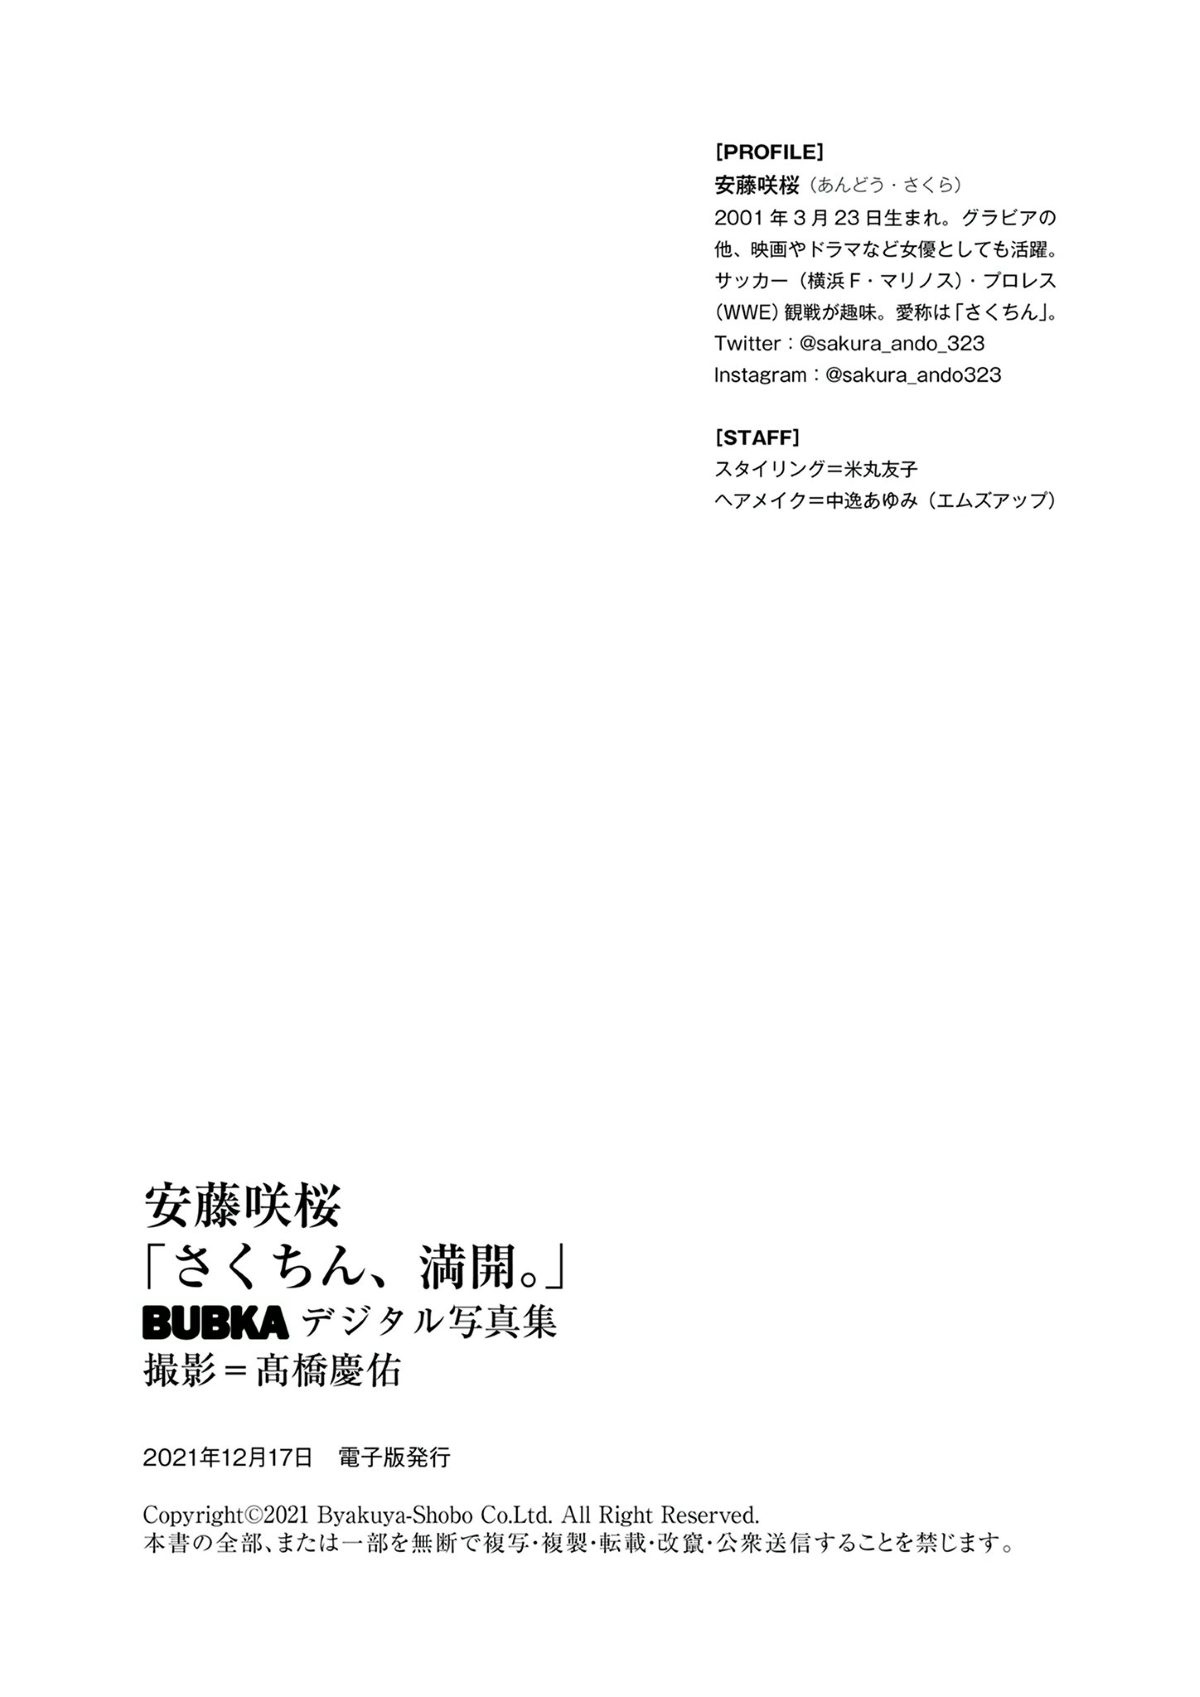 BUBKA Photobook 2021 12 24 Sakura Ando 安藤咲桜 Sakuchin full bloom さくちん、満開。 070 0065215375.jpg